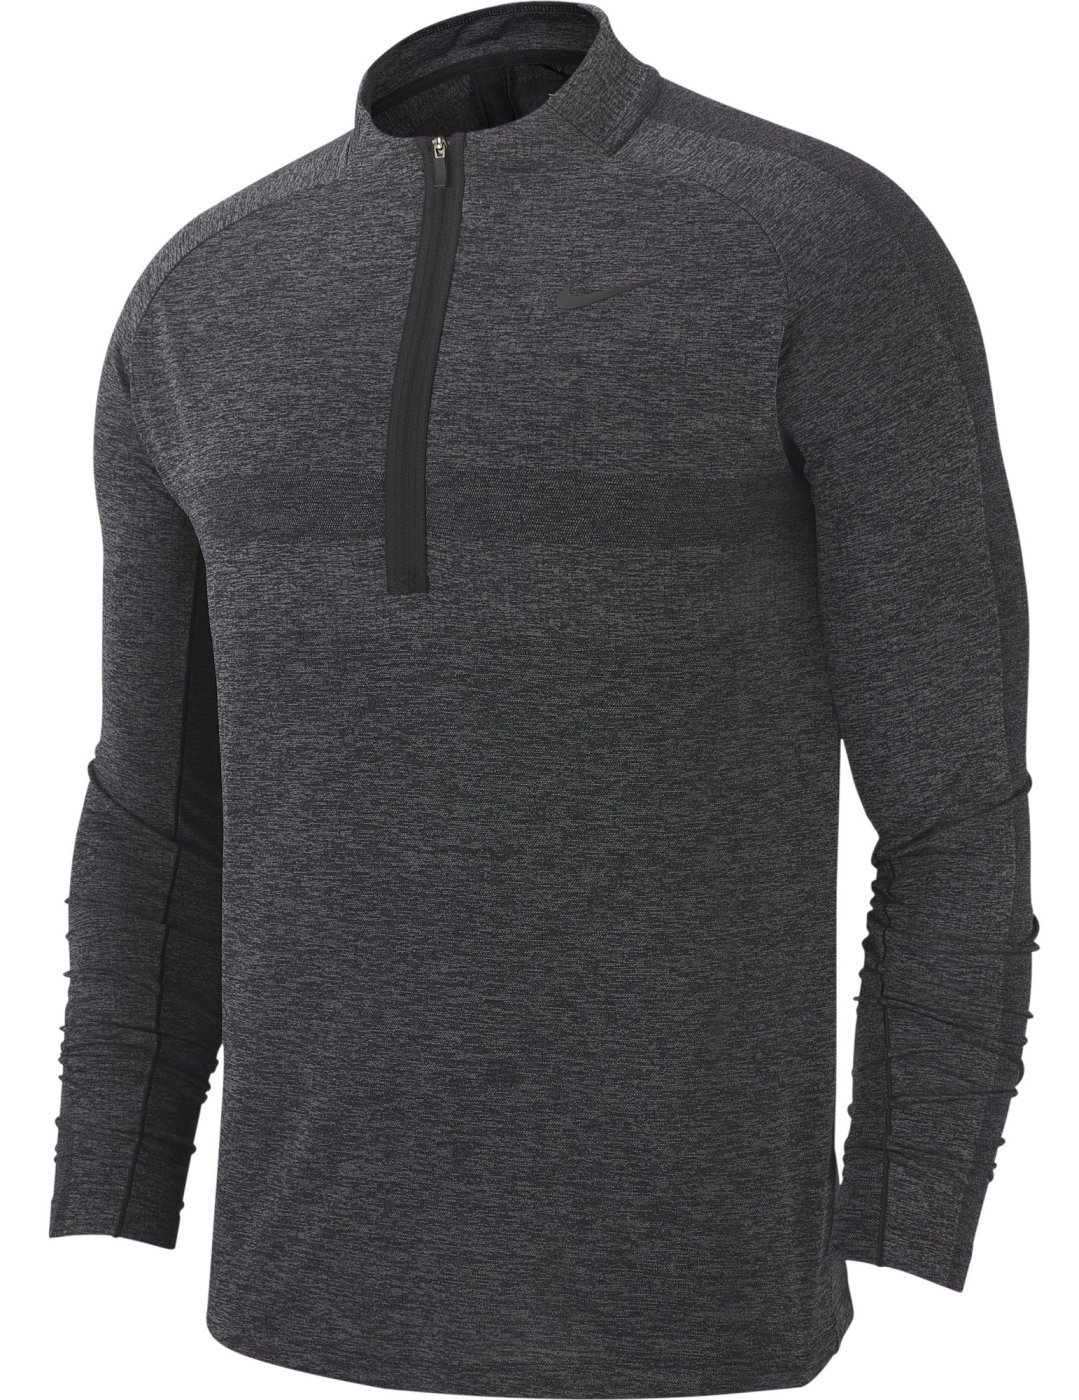 Tröja Nike Dry Knit Statement 1/2 Zip Mens Sweater Black/Dark Grey L